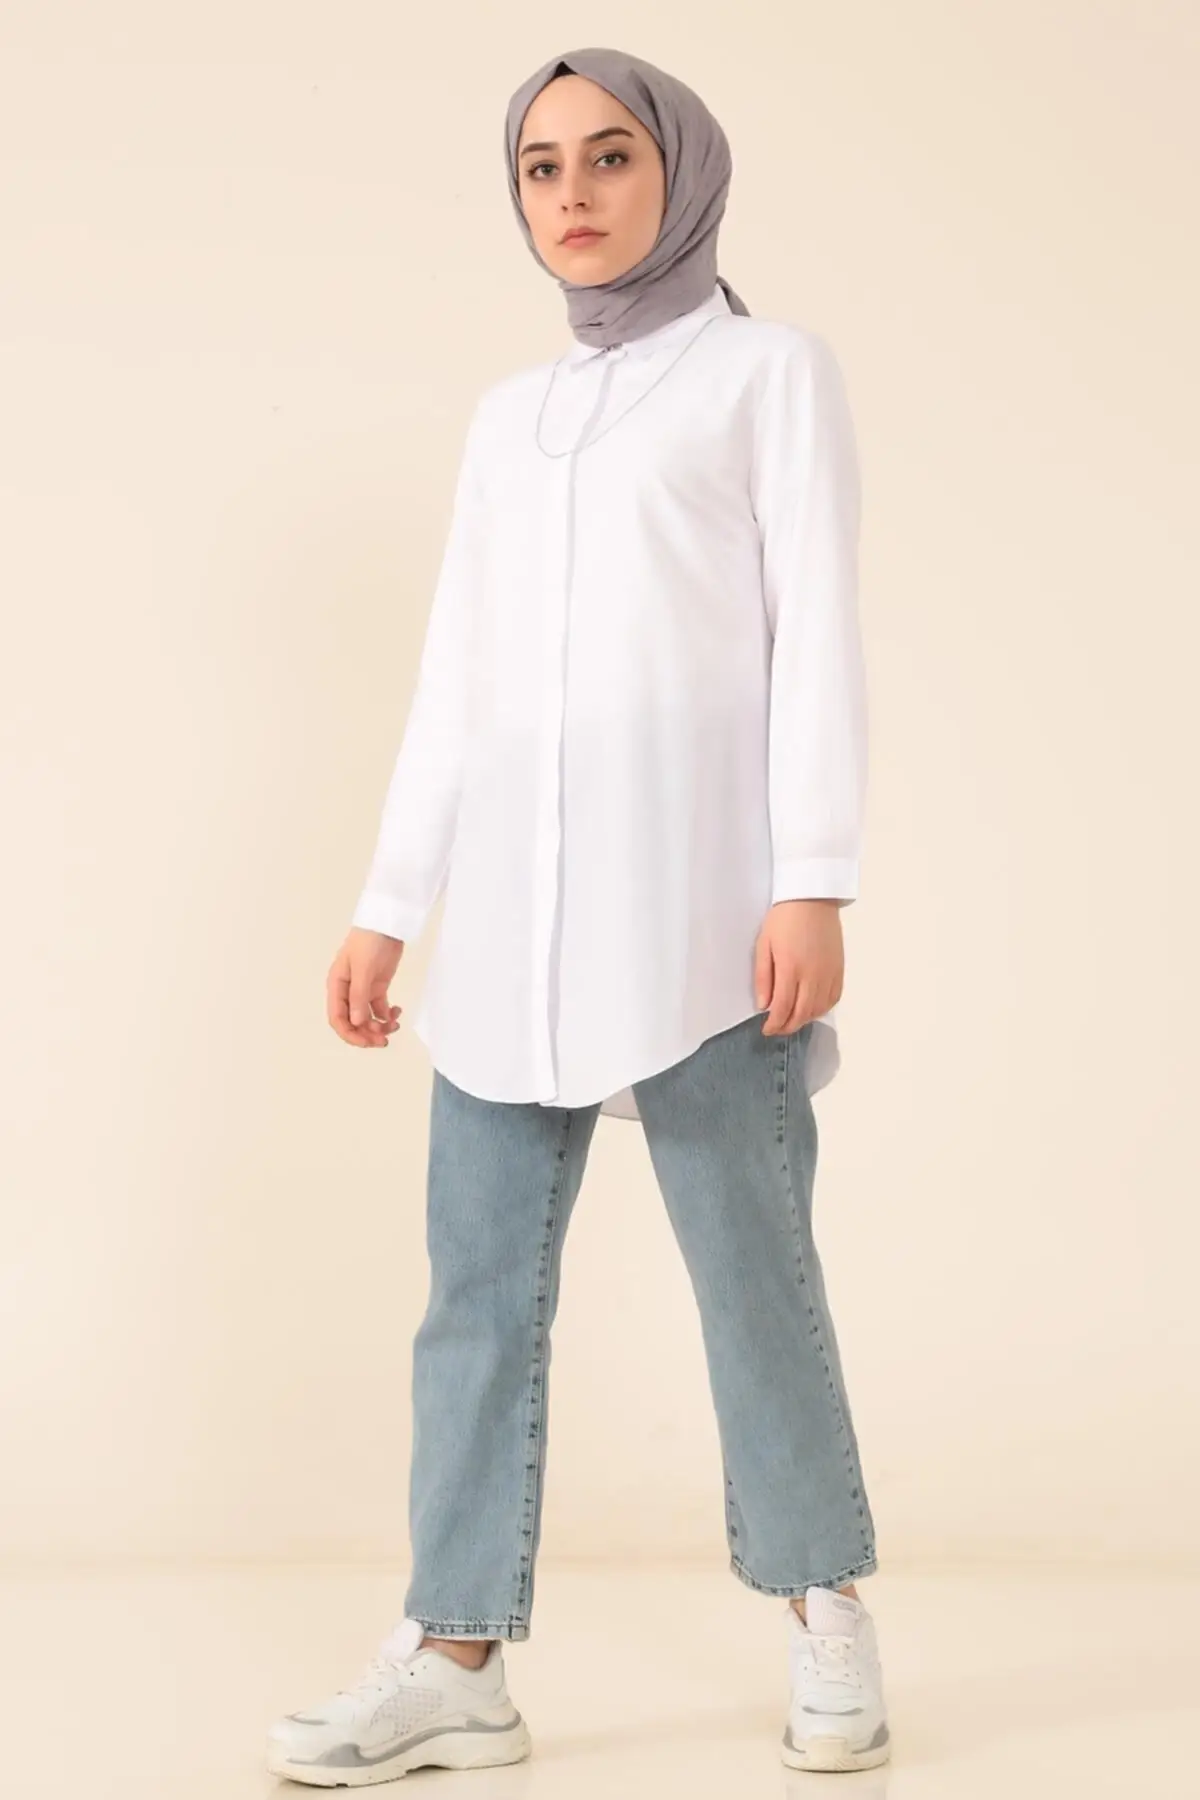 Хиджаб одежда Аравия Дубай модель 2022 модное наружное мусульманское платье Boyfrend рубашка